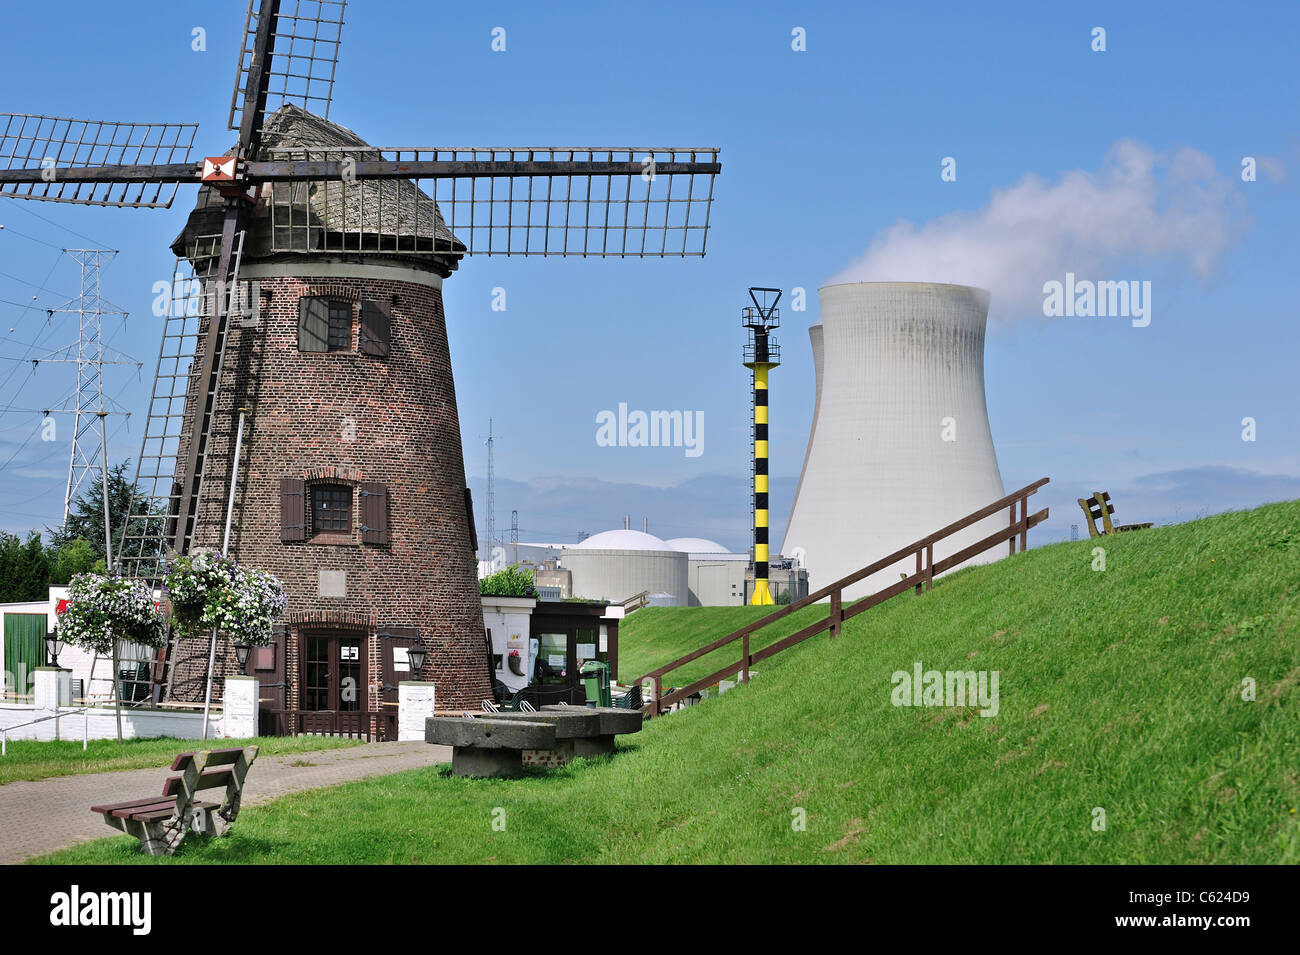 El Windmill Scheldedijkmolen y torres de enfriamiento de la planta nuclear Doel junto al río Escalda en Beveren, Bélgica Foto de stock